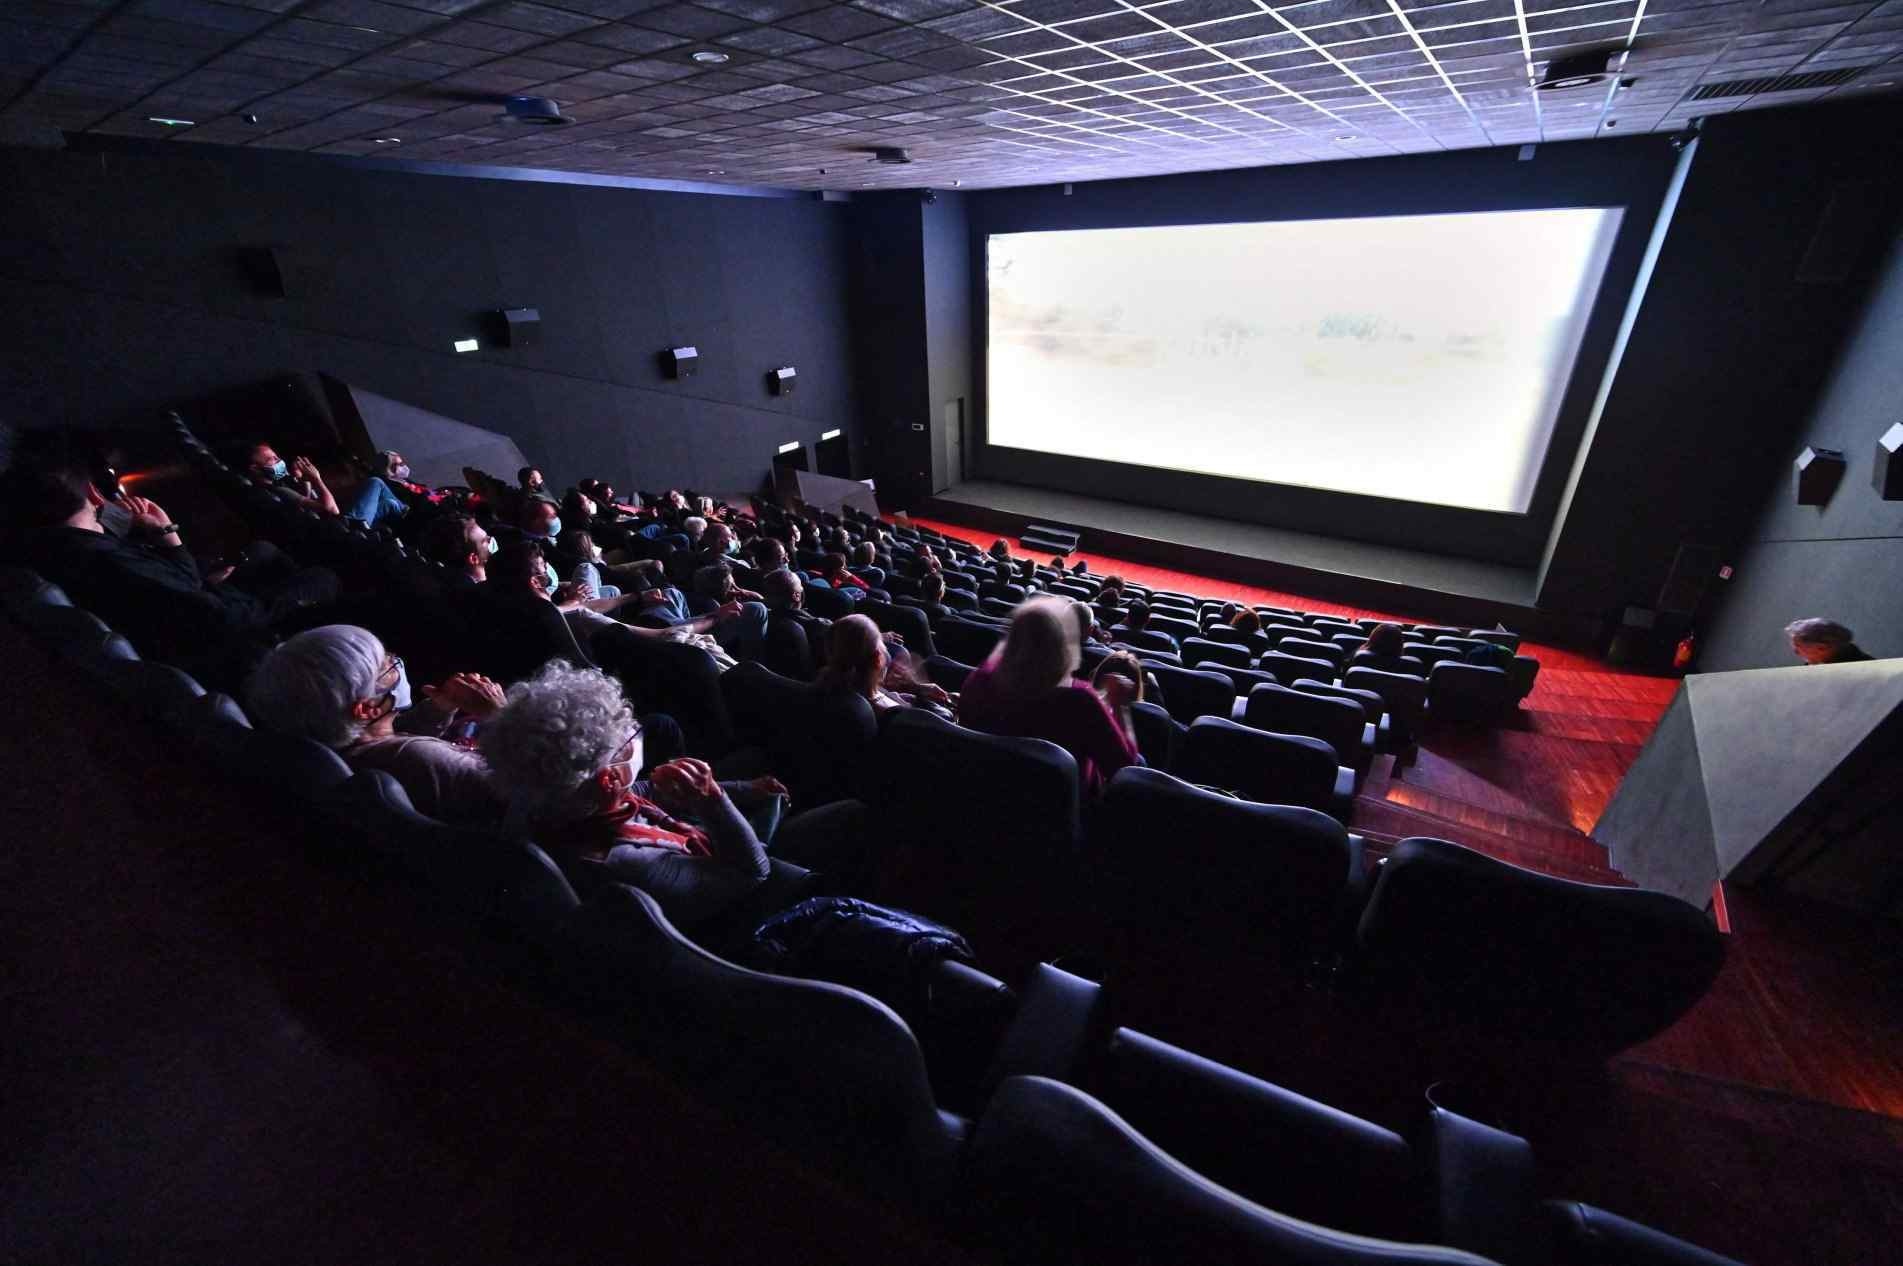 Cinemas devem obedecer normas de segurança e distanciamento.